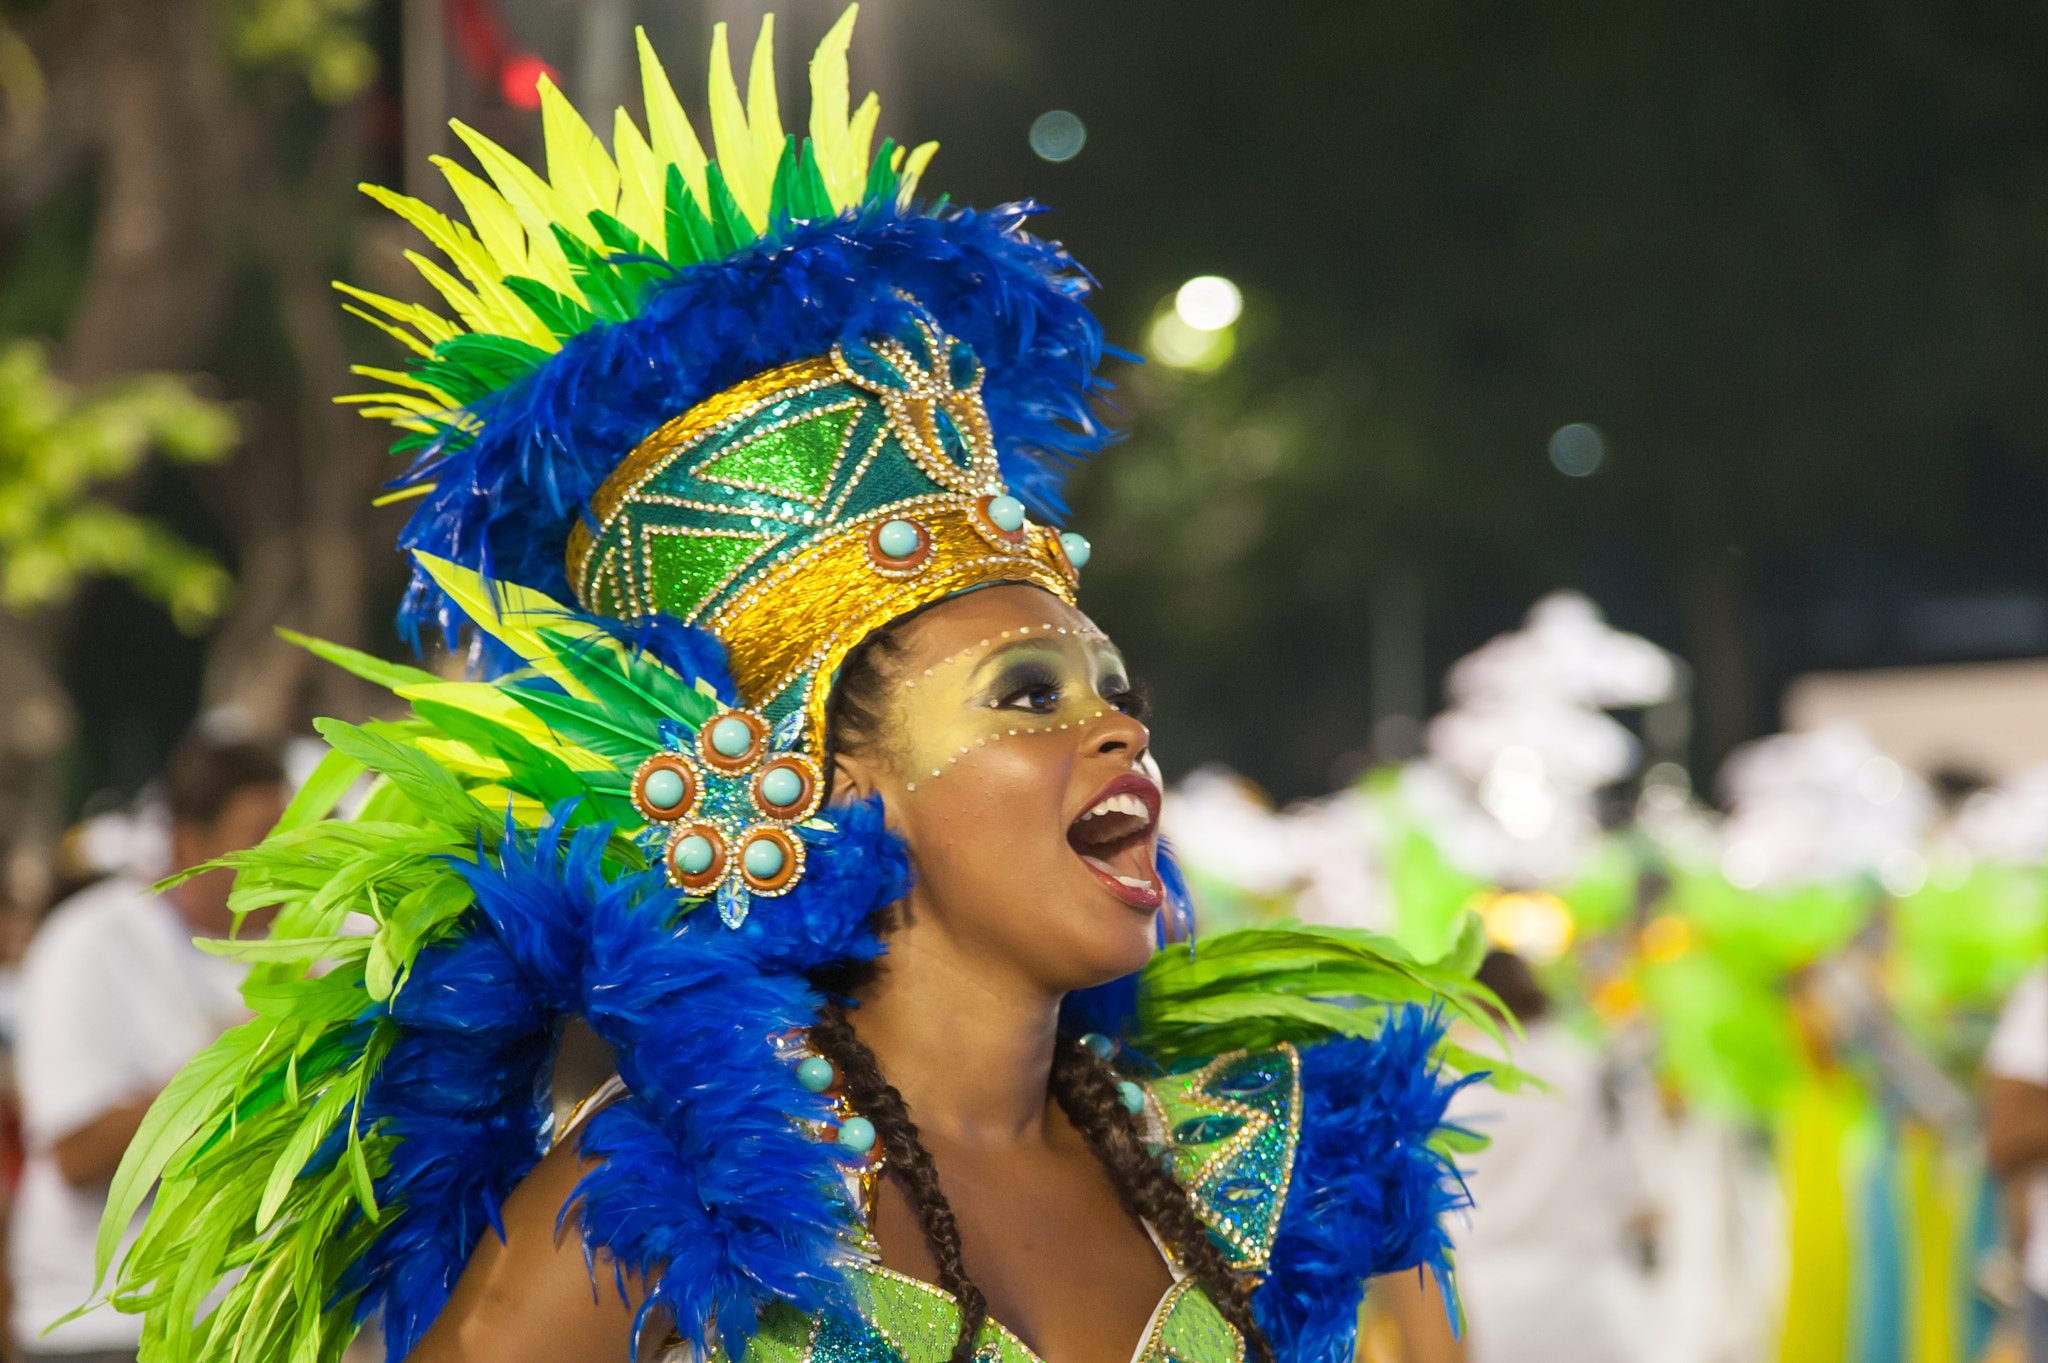 Nikon D700 sample photo. Carnaval no rio de janeiro 2017 photography